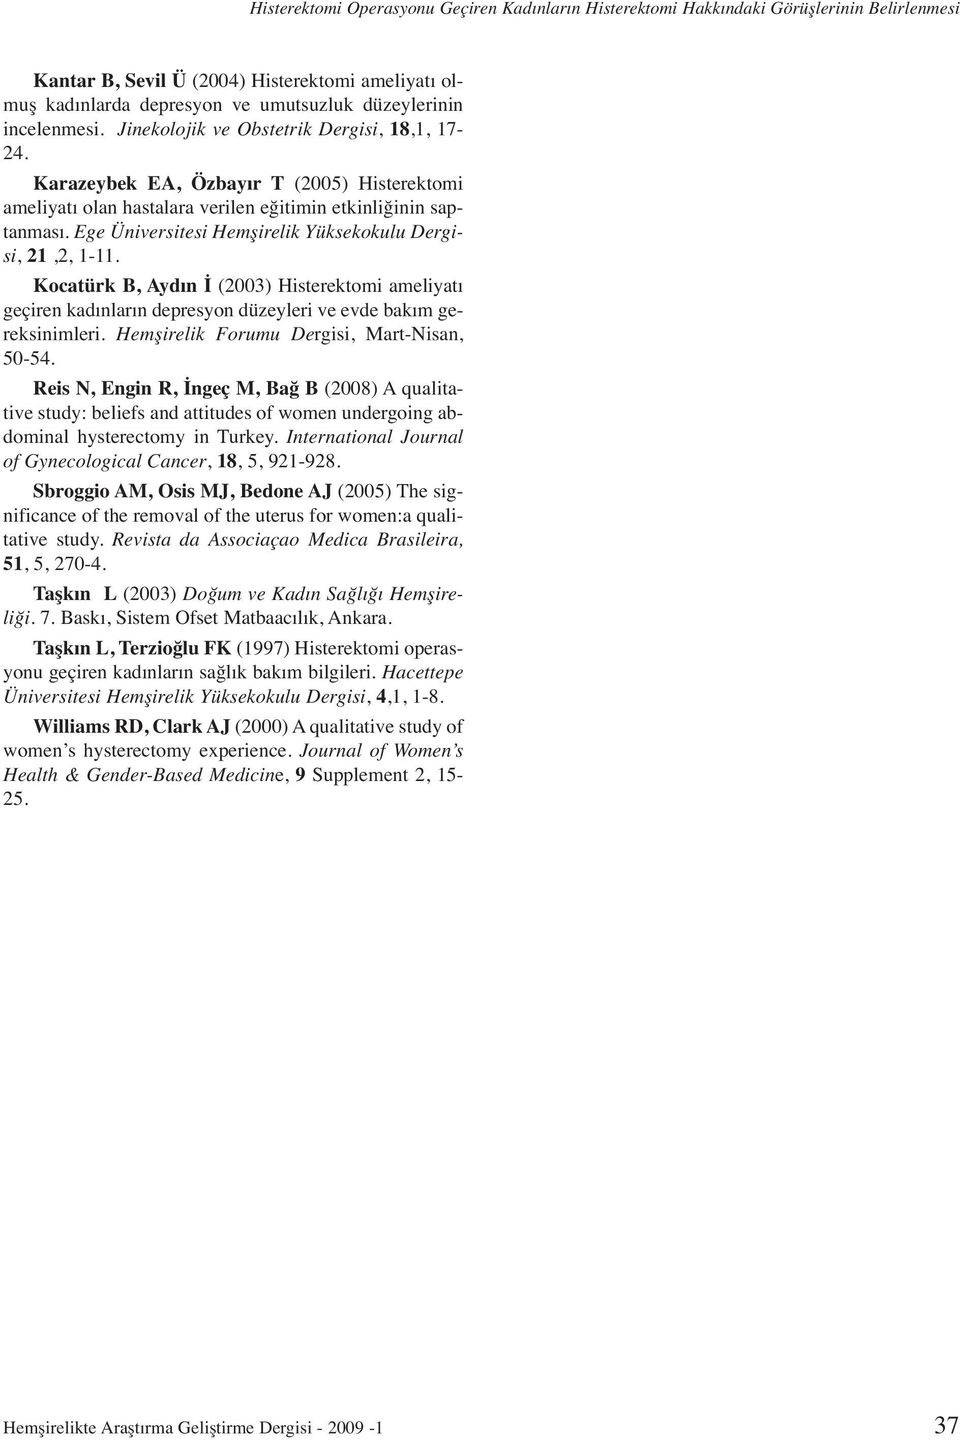 Ege Üniversitesi Hemşirelik Yüksekokulu Dergisi, 21,2, 1-11. Kocatürk B, Aydın İ (2003) Histerektomi ameliyatı geçiren kadınların depresyon düzeyleri ve evde bakım gereksinimleri.